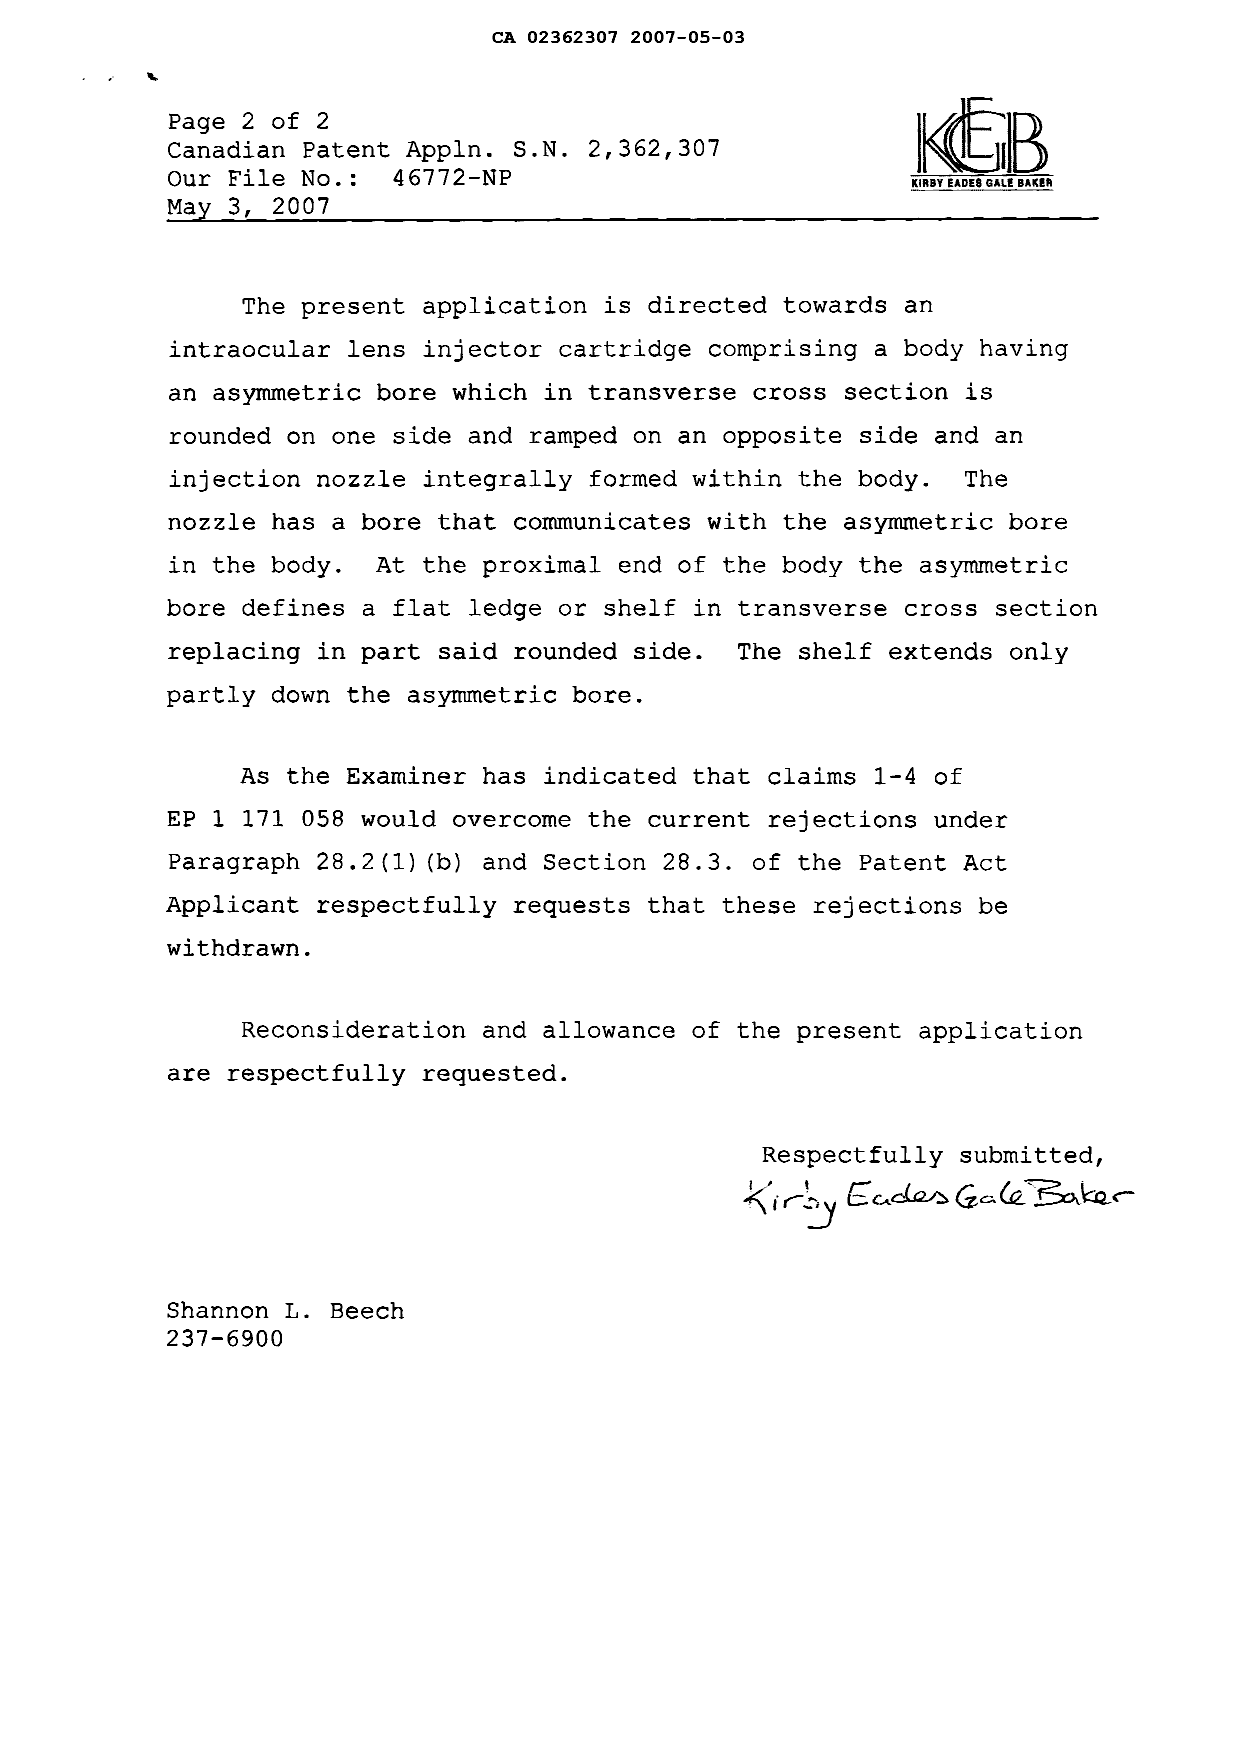 Document de brevet canadien 2362307. Poursuite-Amendment 20061203. Image 2 de 3